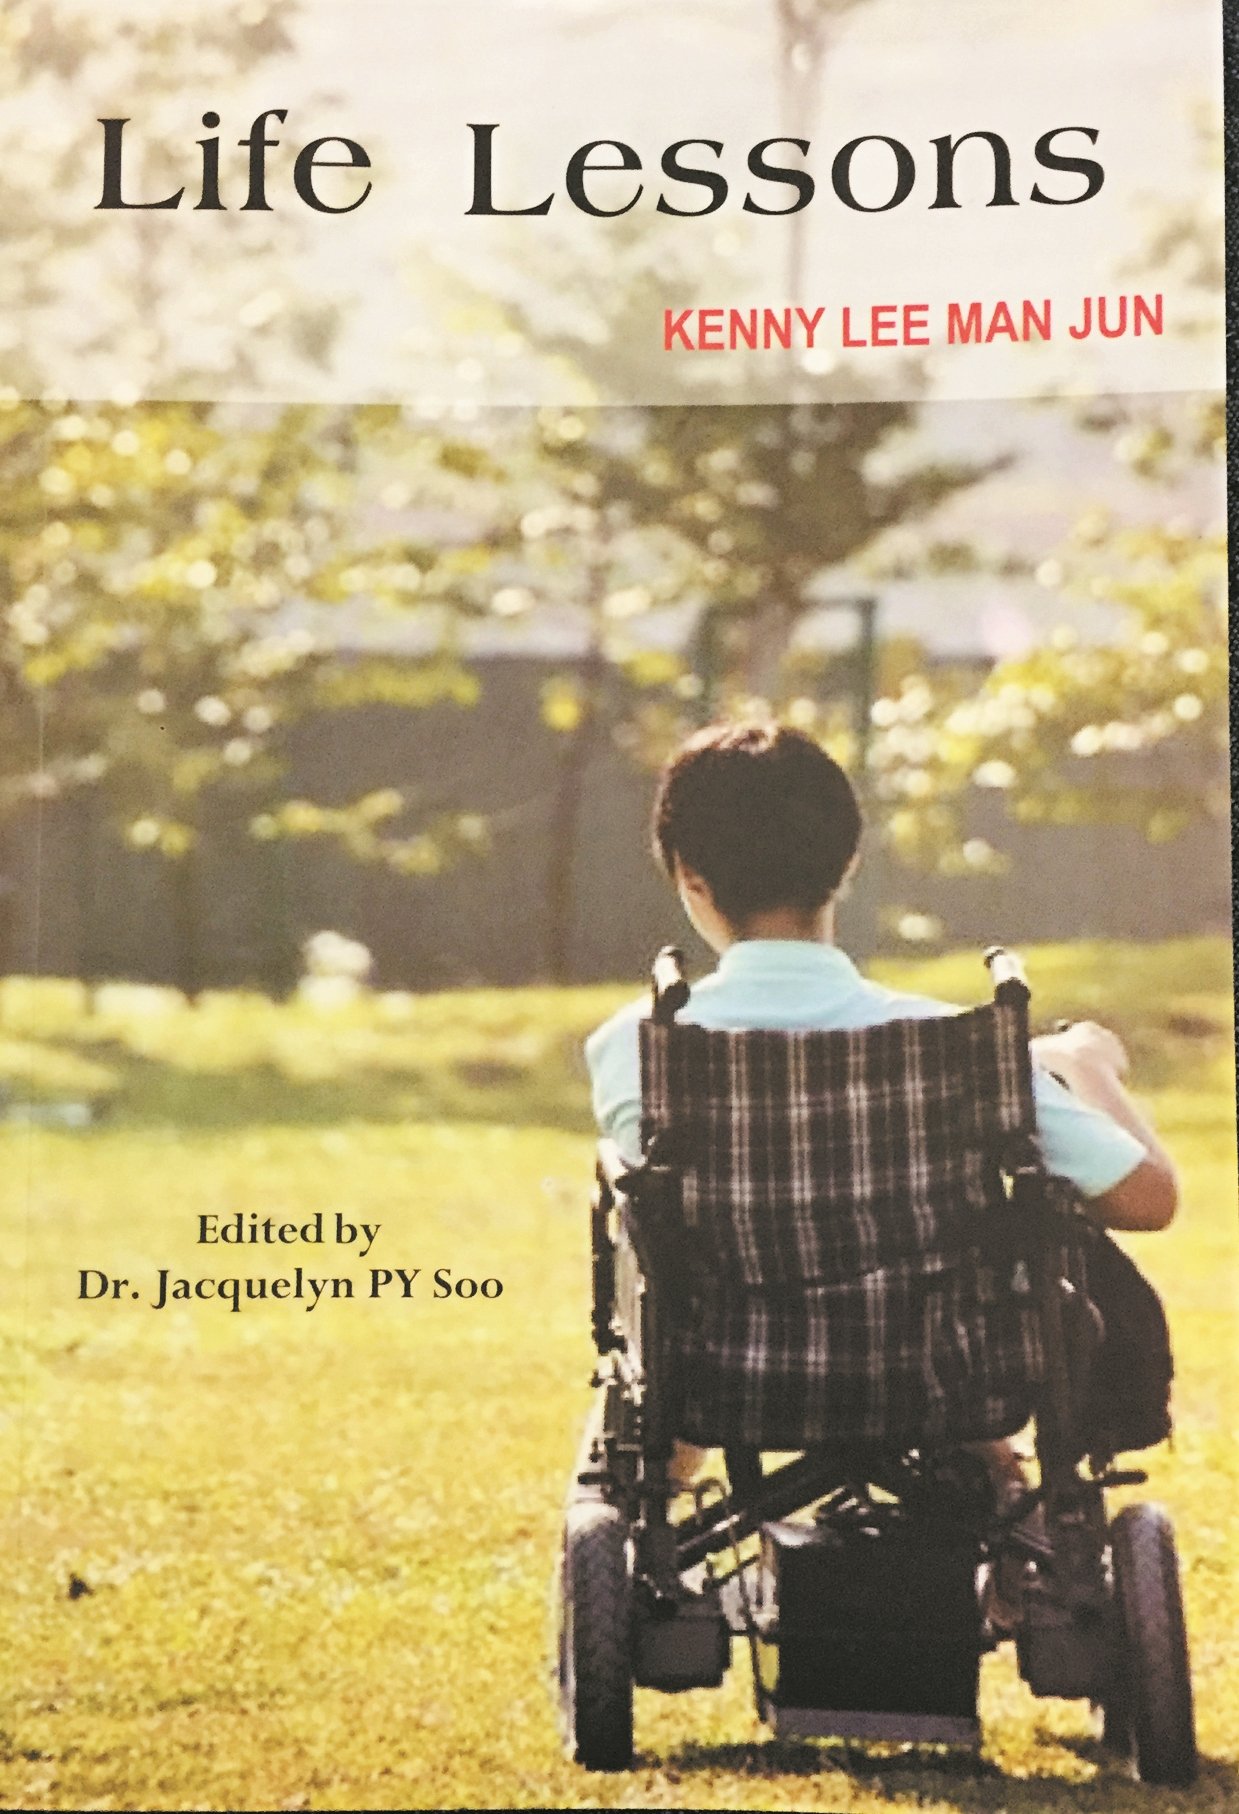 《Life Lesson》叙述李文进生病以来的反思与想法，是他对生命的领悟。他希望这本书能鼓励更多人不轻言放弃。